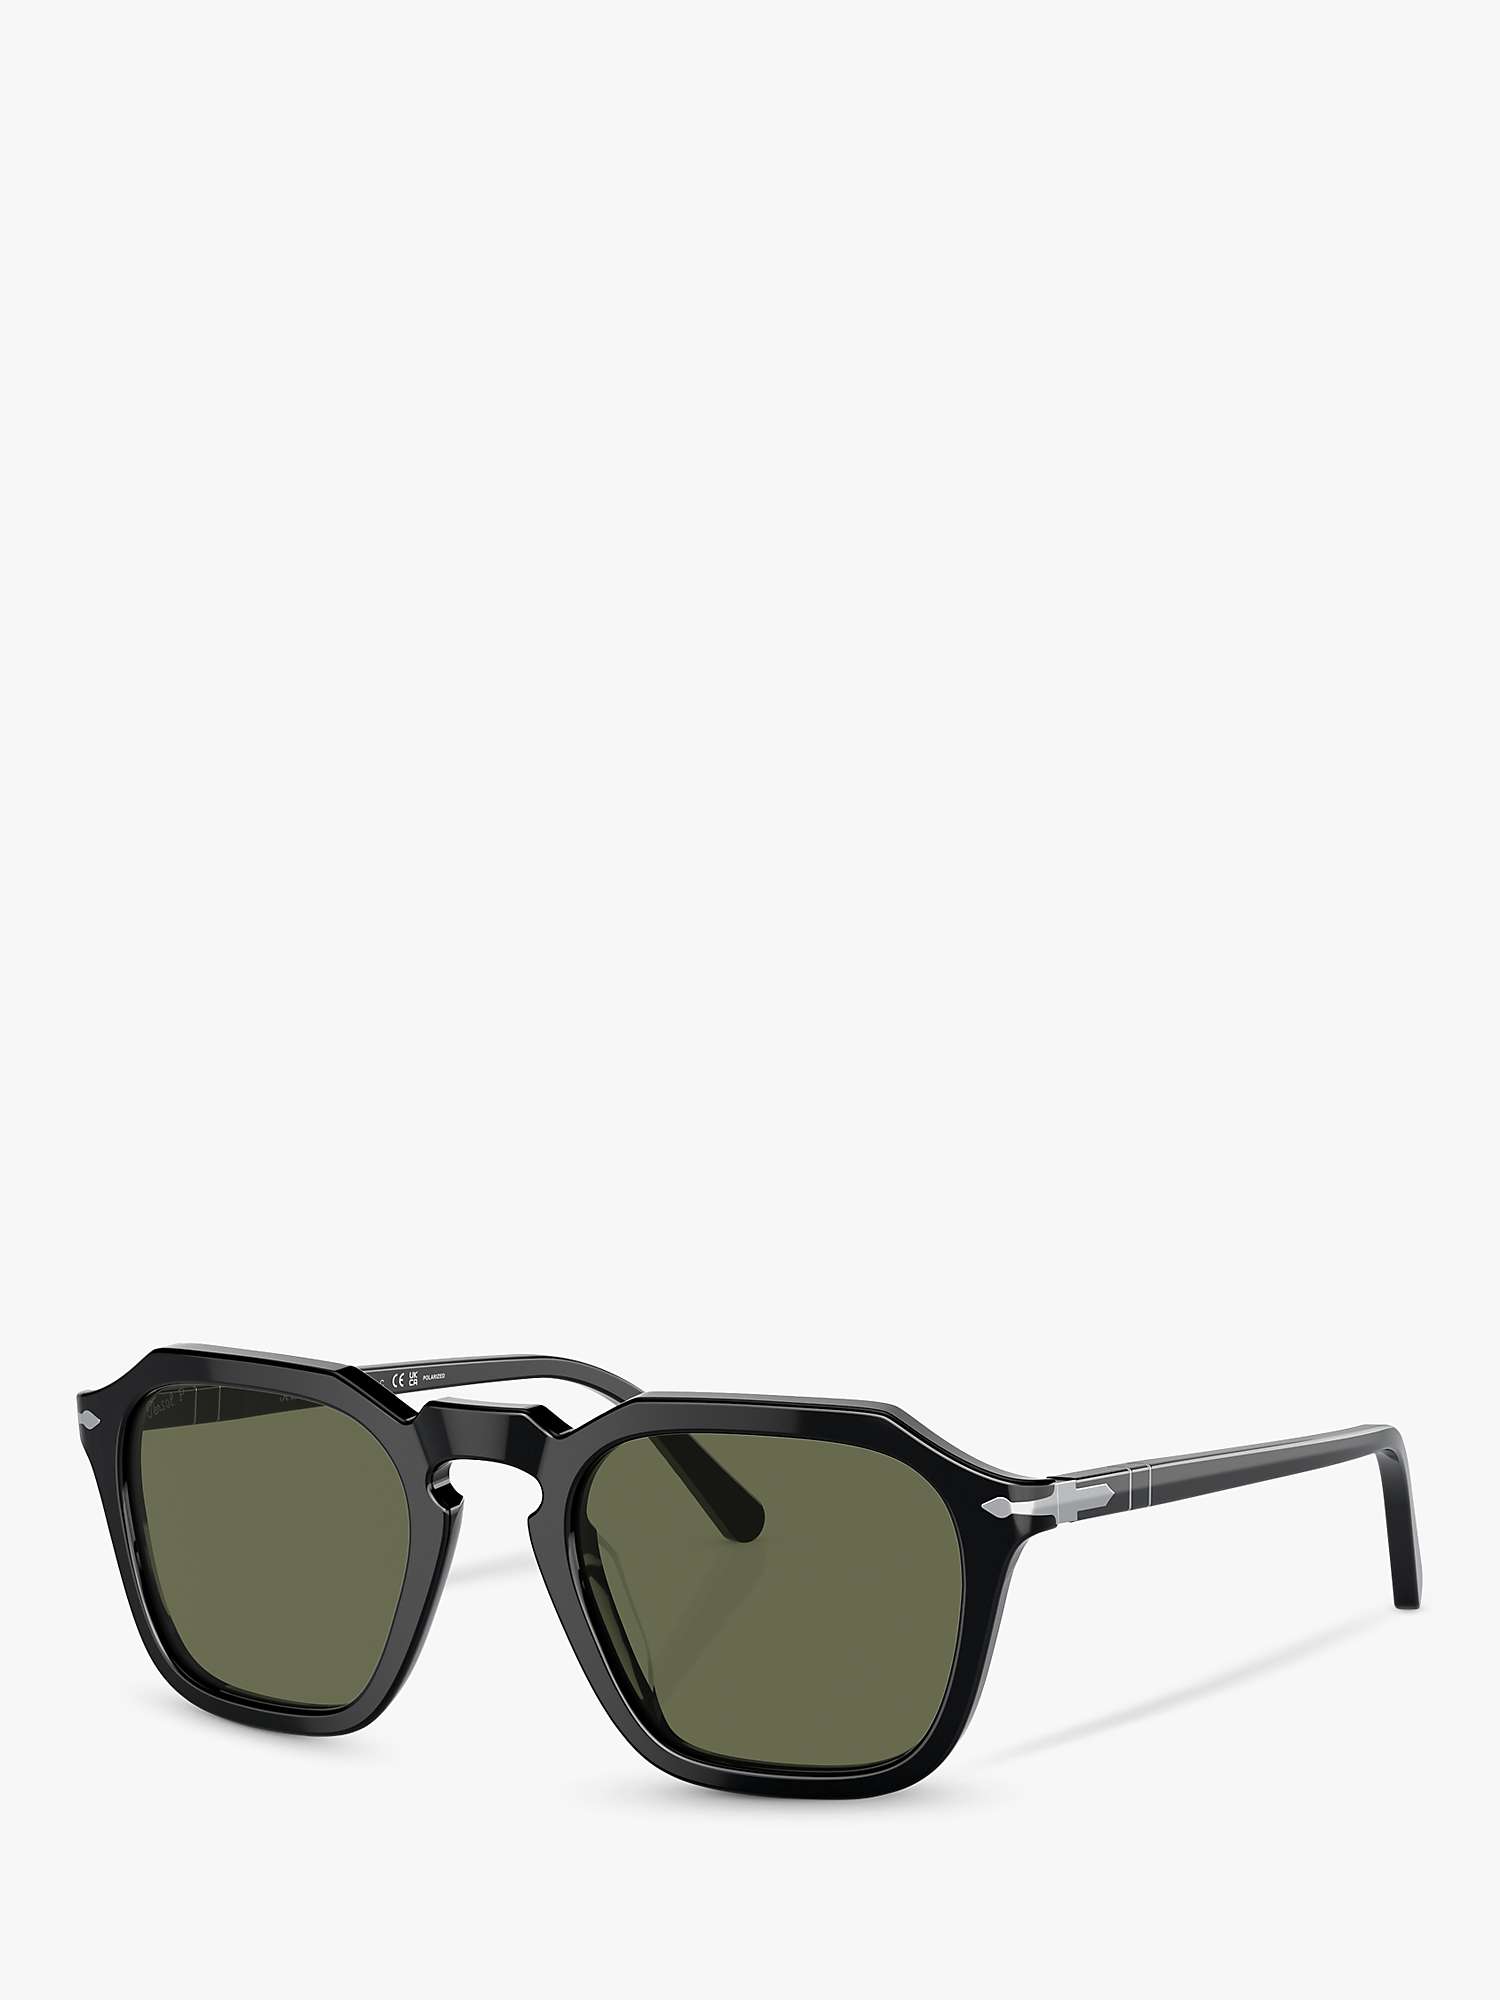 Buy Persol PO3292S Polarised Square Sunglasses Online at johnlewis.com